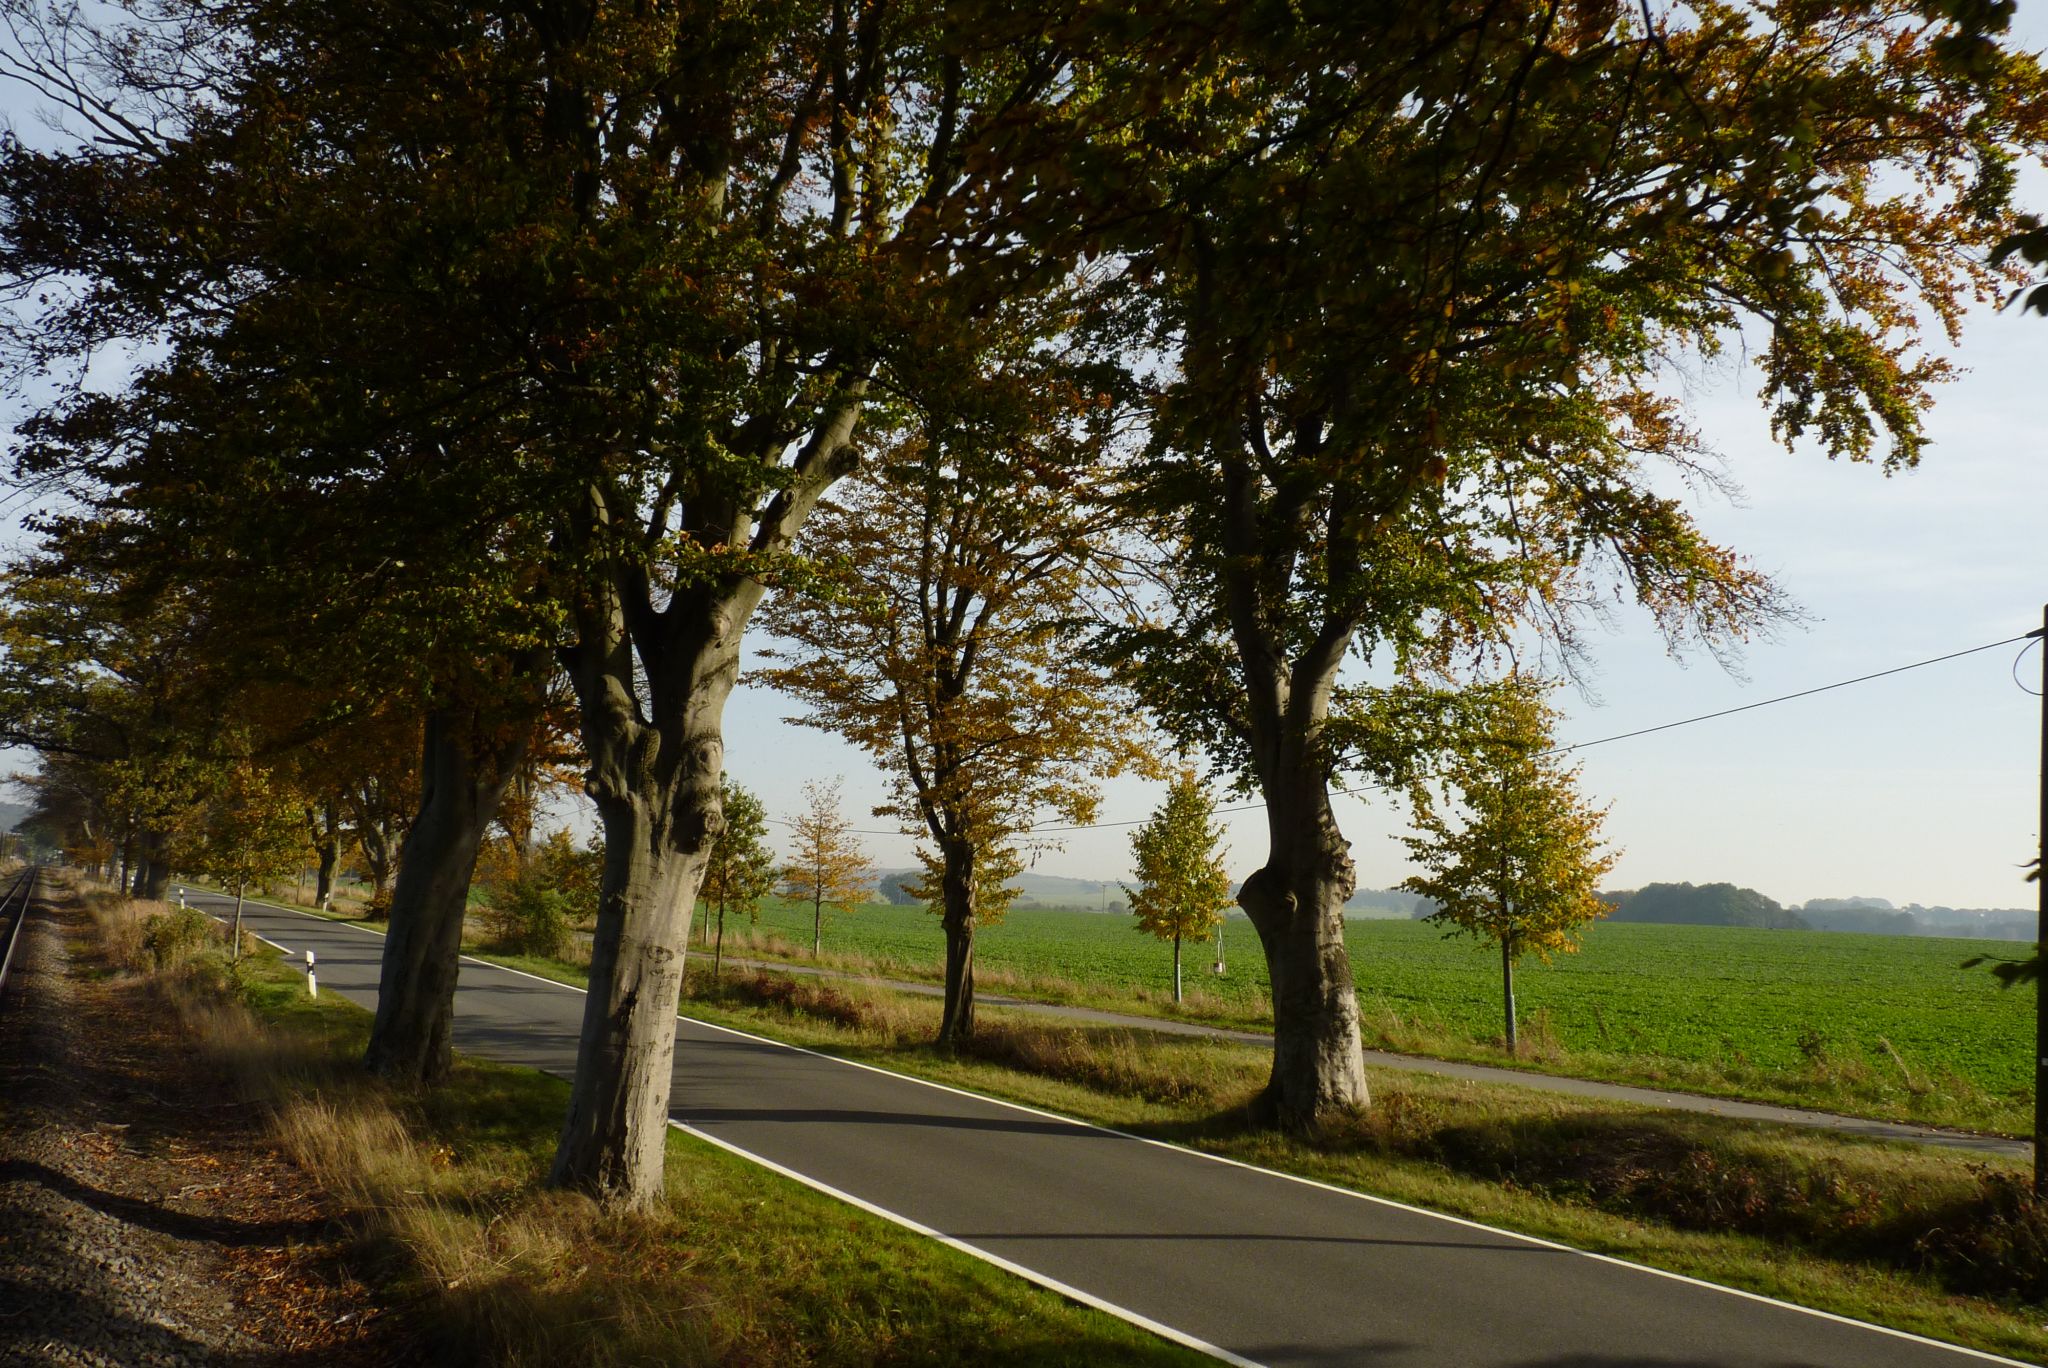 Cesta ze Sellinu do Putbusu. Podél silnice vznikla nedávno cyklostezka s další řadou stromů.